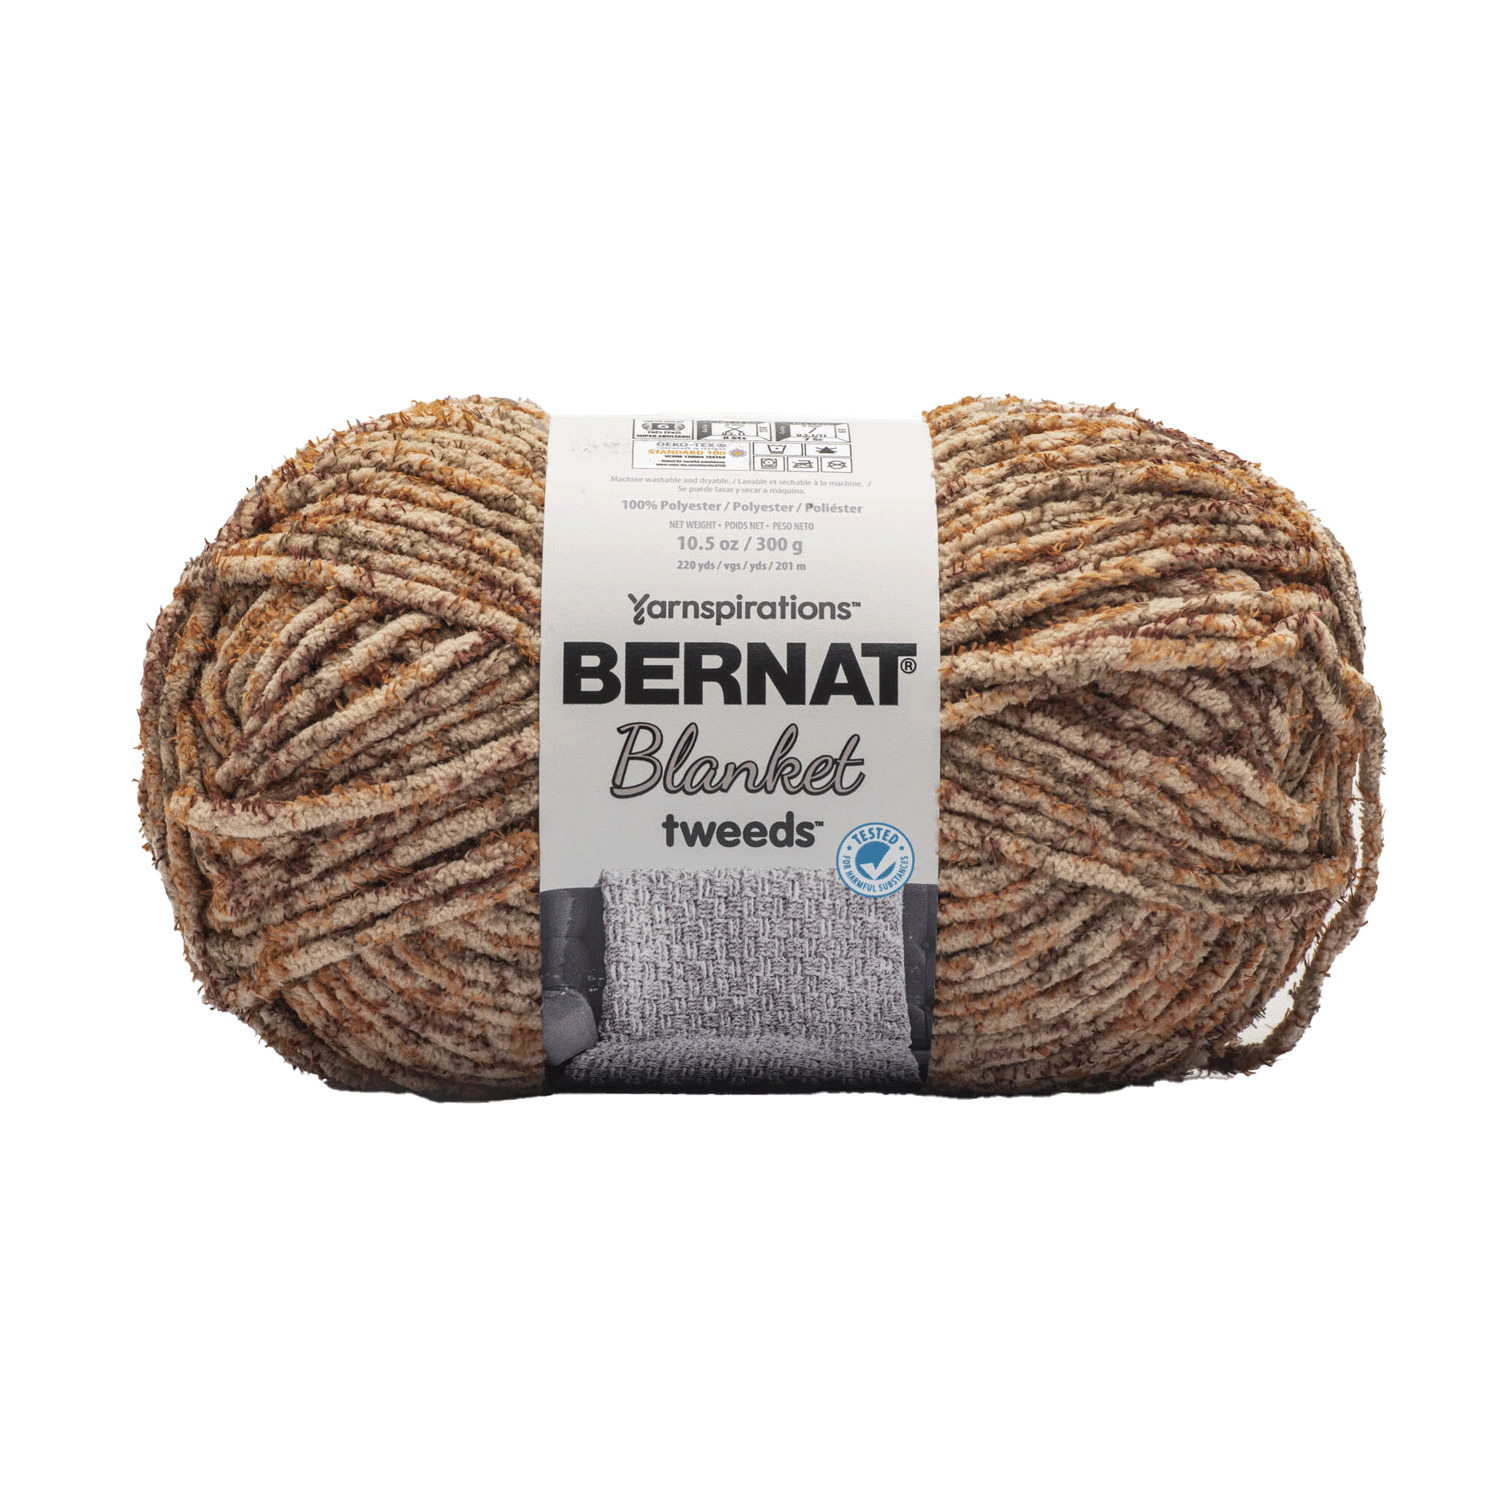 Bernat Blanket Tweeds - Fil, Tweed sablé